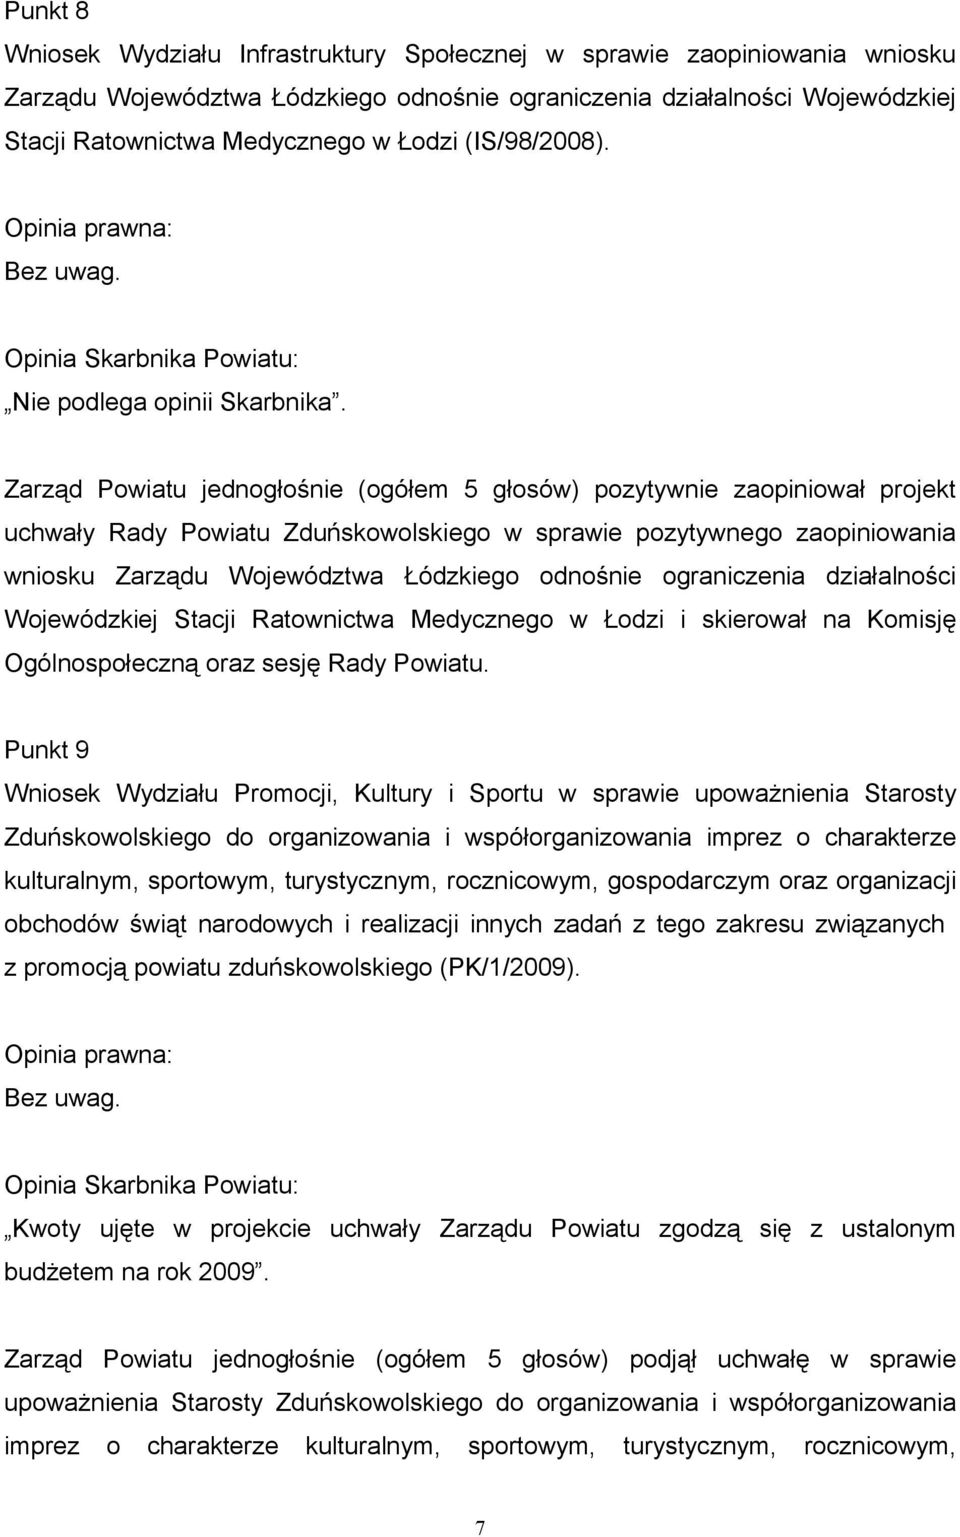 Zarząd Powiatu jednogłośnie (ogółem 5 głosów) pozytywnie zaopiniował projekt uchwały Rady Powiatu Zduńskowolskiego w sprawie pozytywnego zaopiniowania wniosku Zarządu Województwa Łódzkiego odnośnie